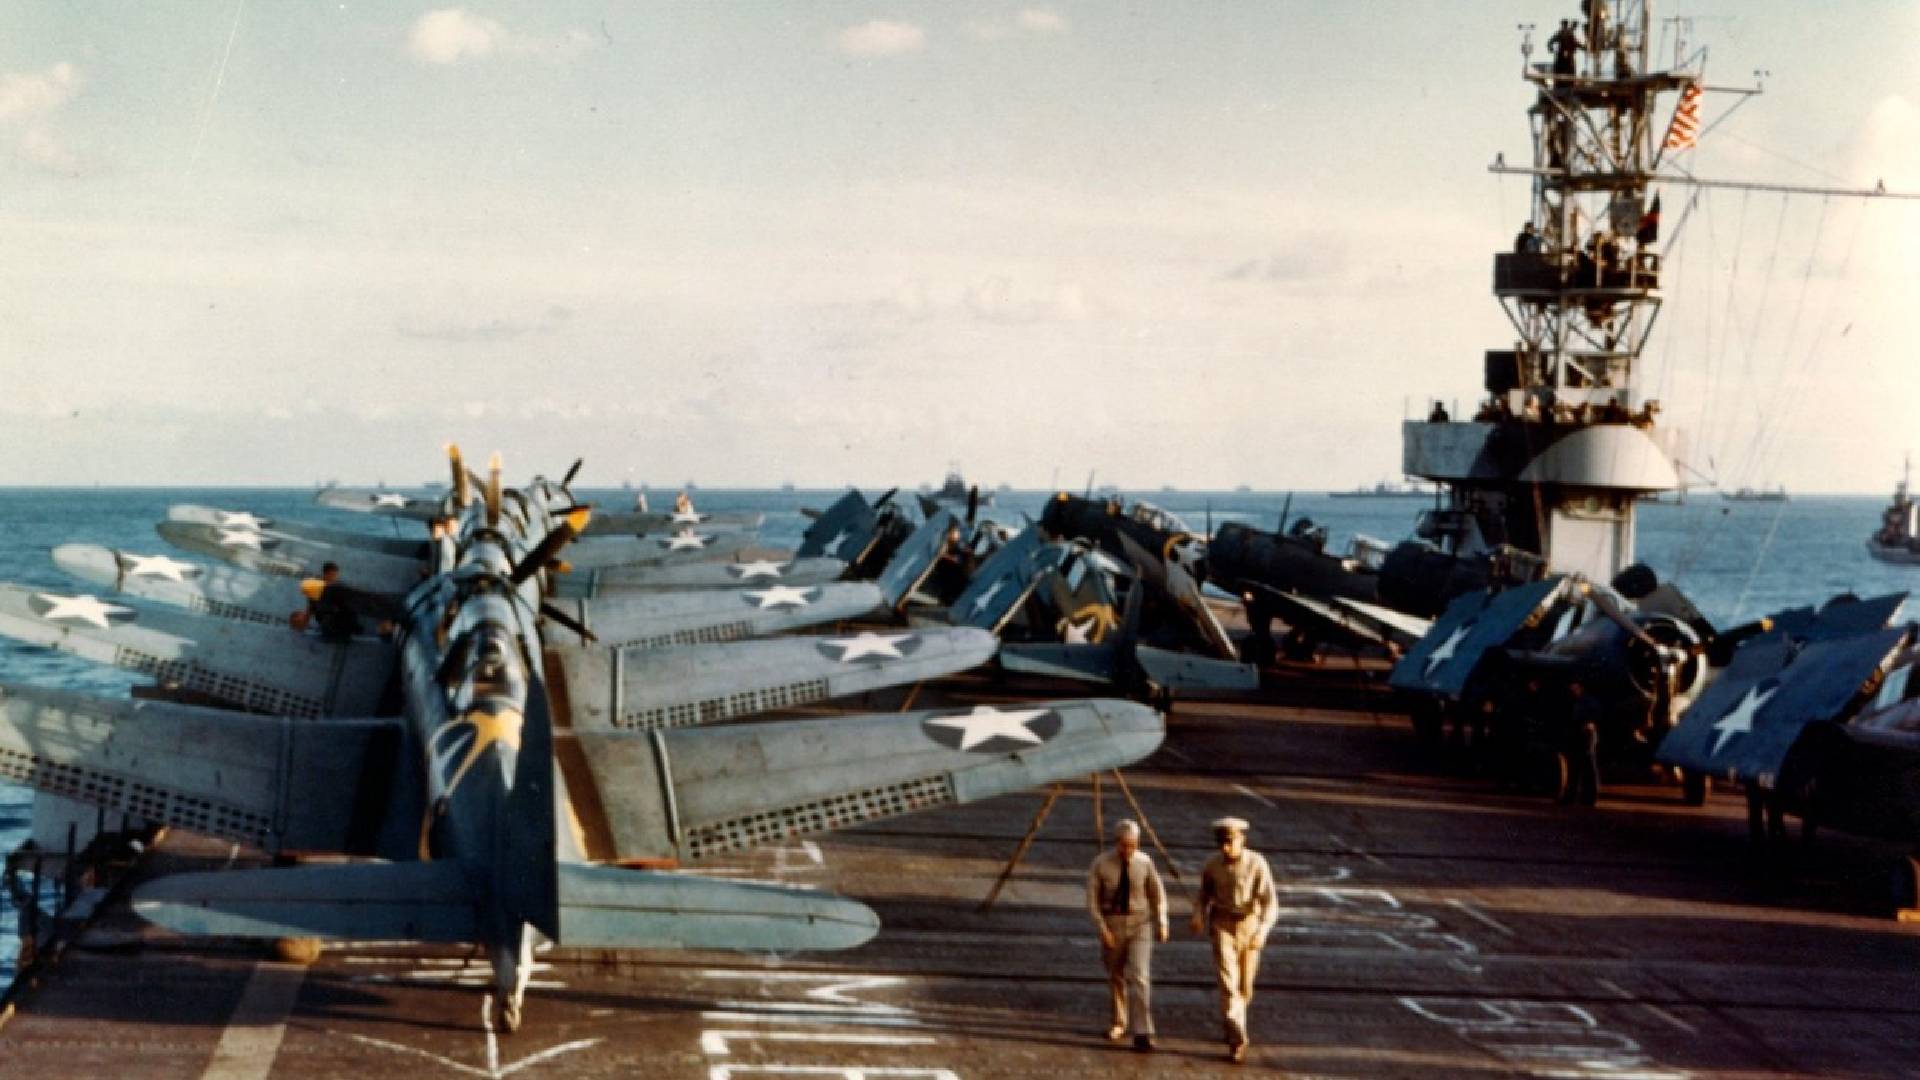 Bombardéry Douglas SBD-3 Dauntless a stíhačky Grumman F4F-4 Wildcat na palubě americké eskortní letadlové lodi USS Santee v době operace Torch